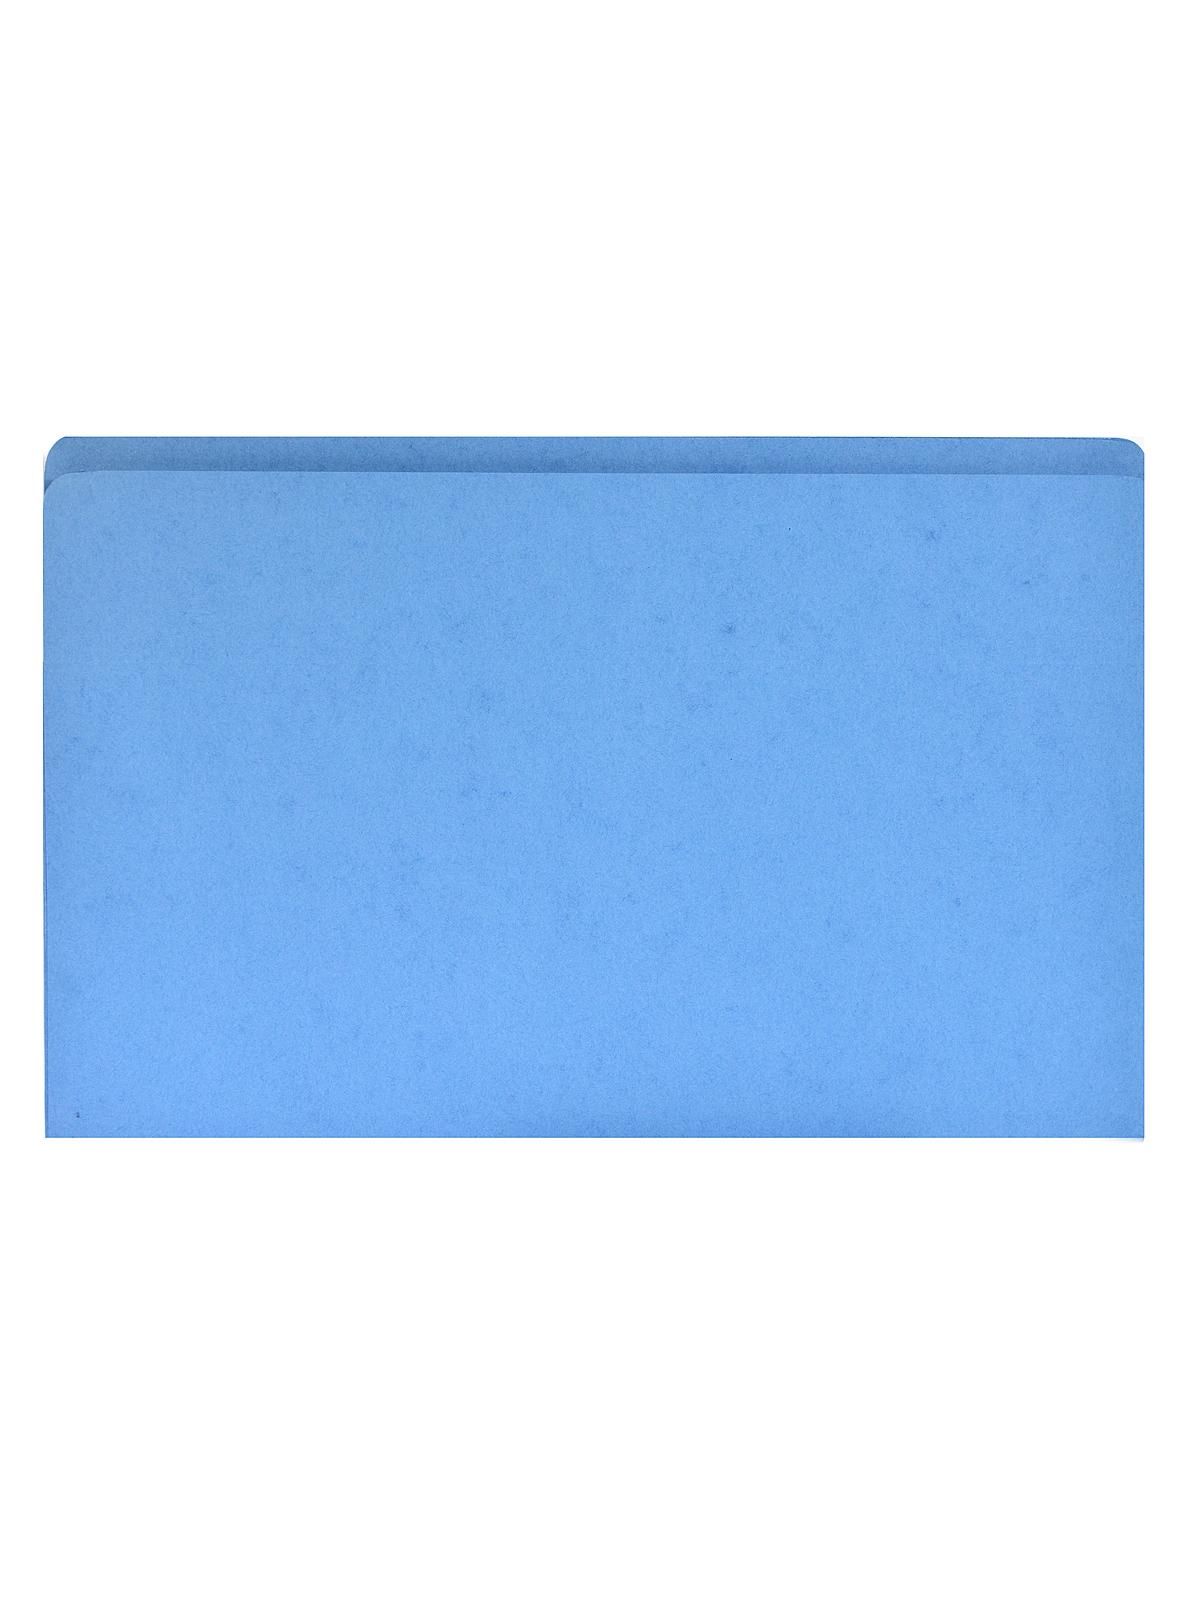 Project Folders Sky Blue 9.5 In. X 14.75 In. X 3.5 In. Each